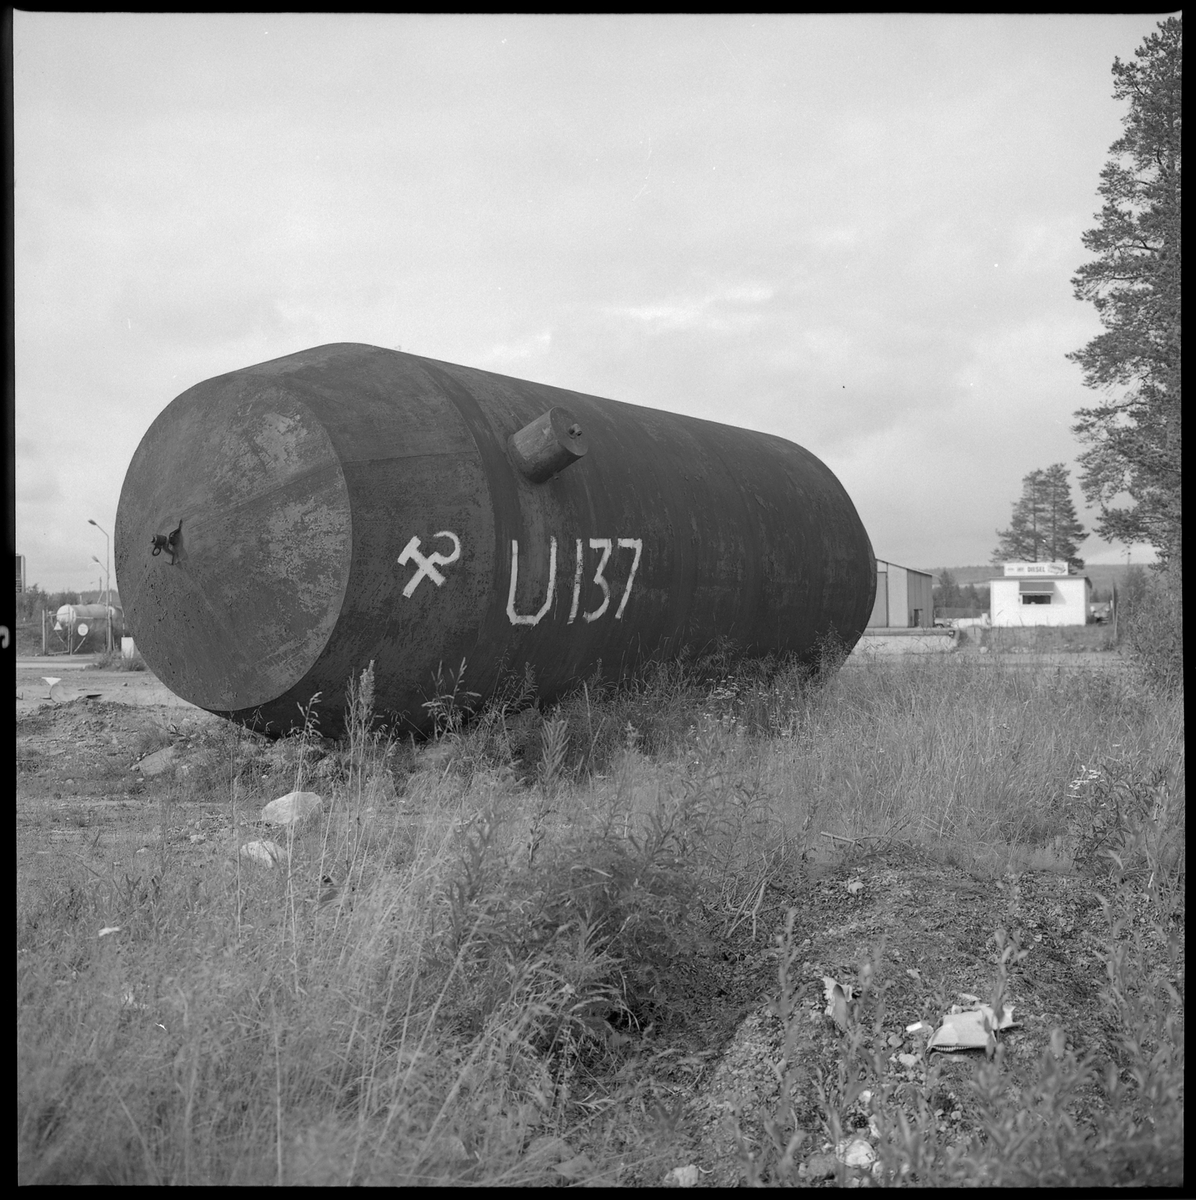 Bilden föreställer en stor ståltank som är märkt med U-137 och Sovjetunionens stadsvapen. Bilden är tagen längs vägen mellan Gällivare och Malmberget.